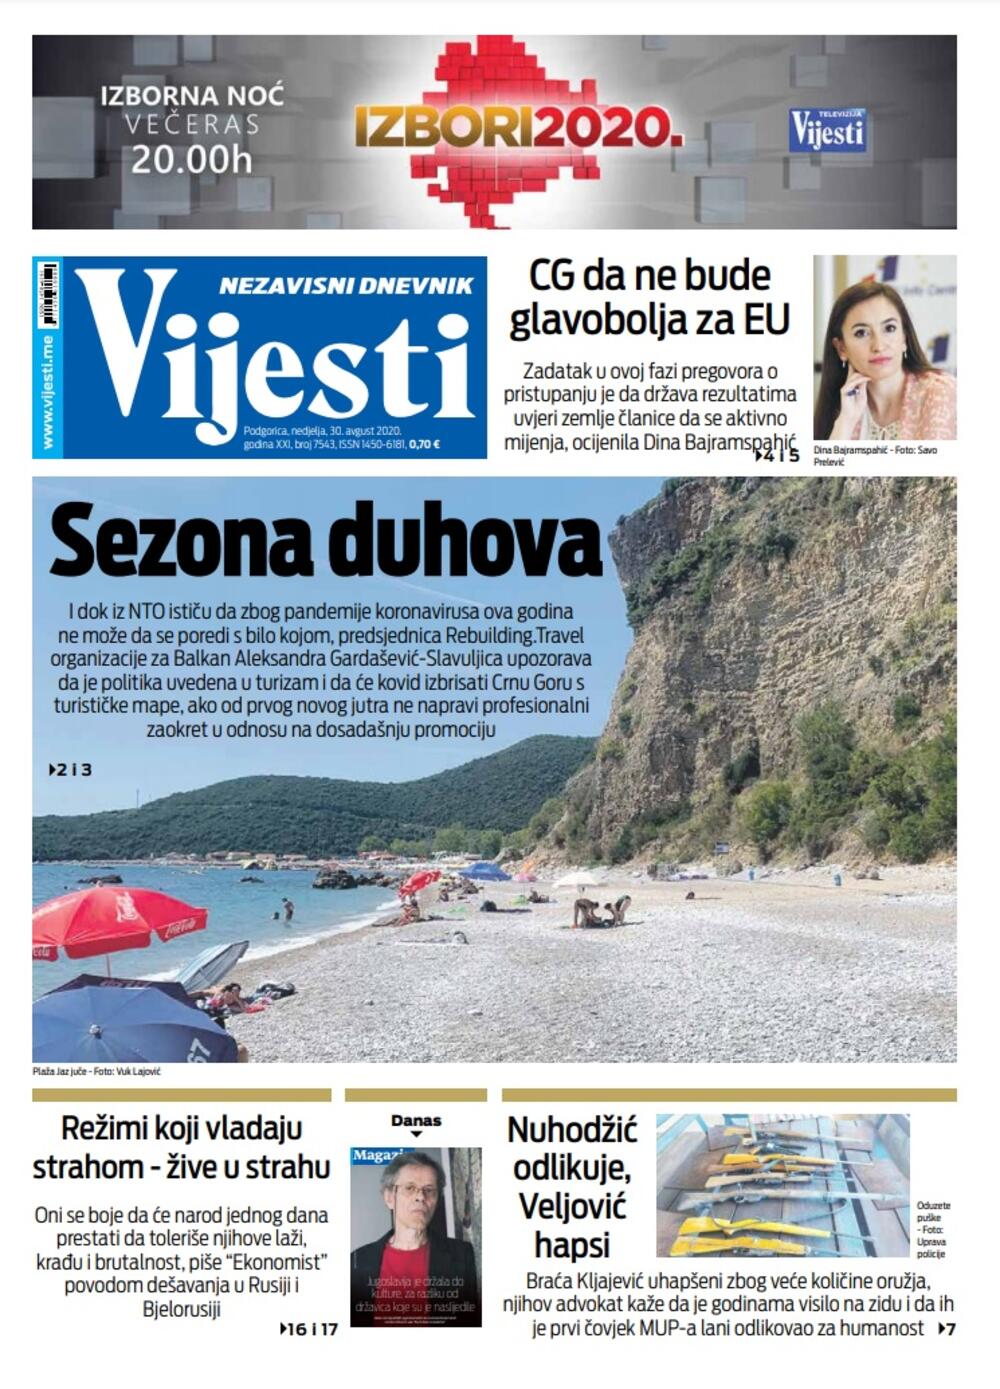 Naslovna strana "Vijesti" za 30. avgust, Foto: Vijesti